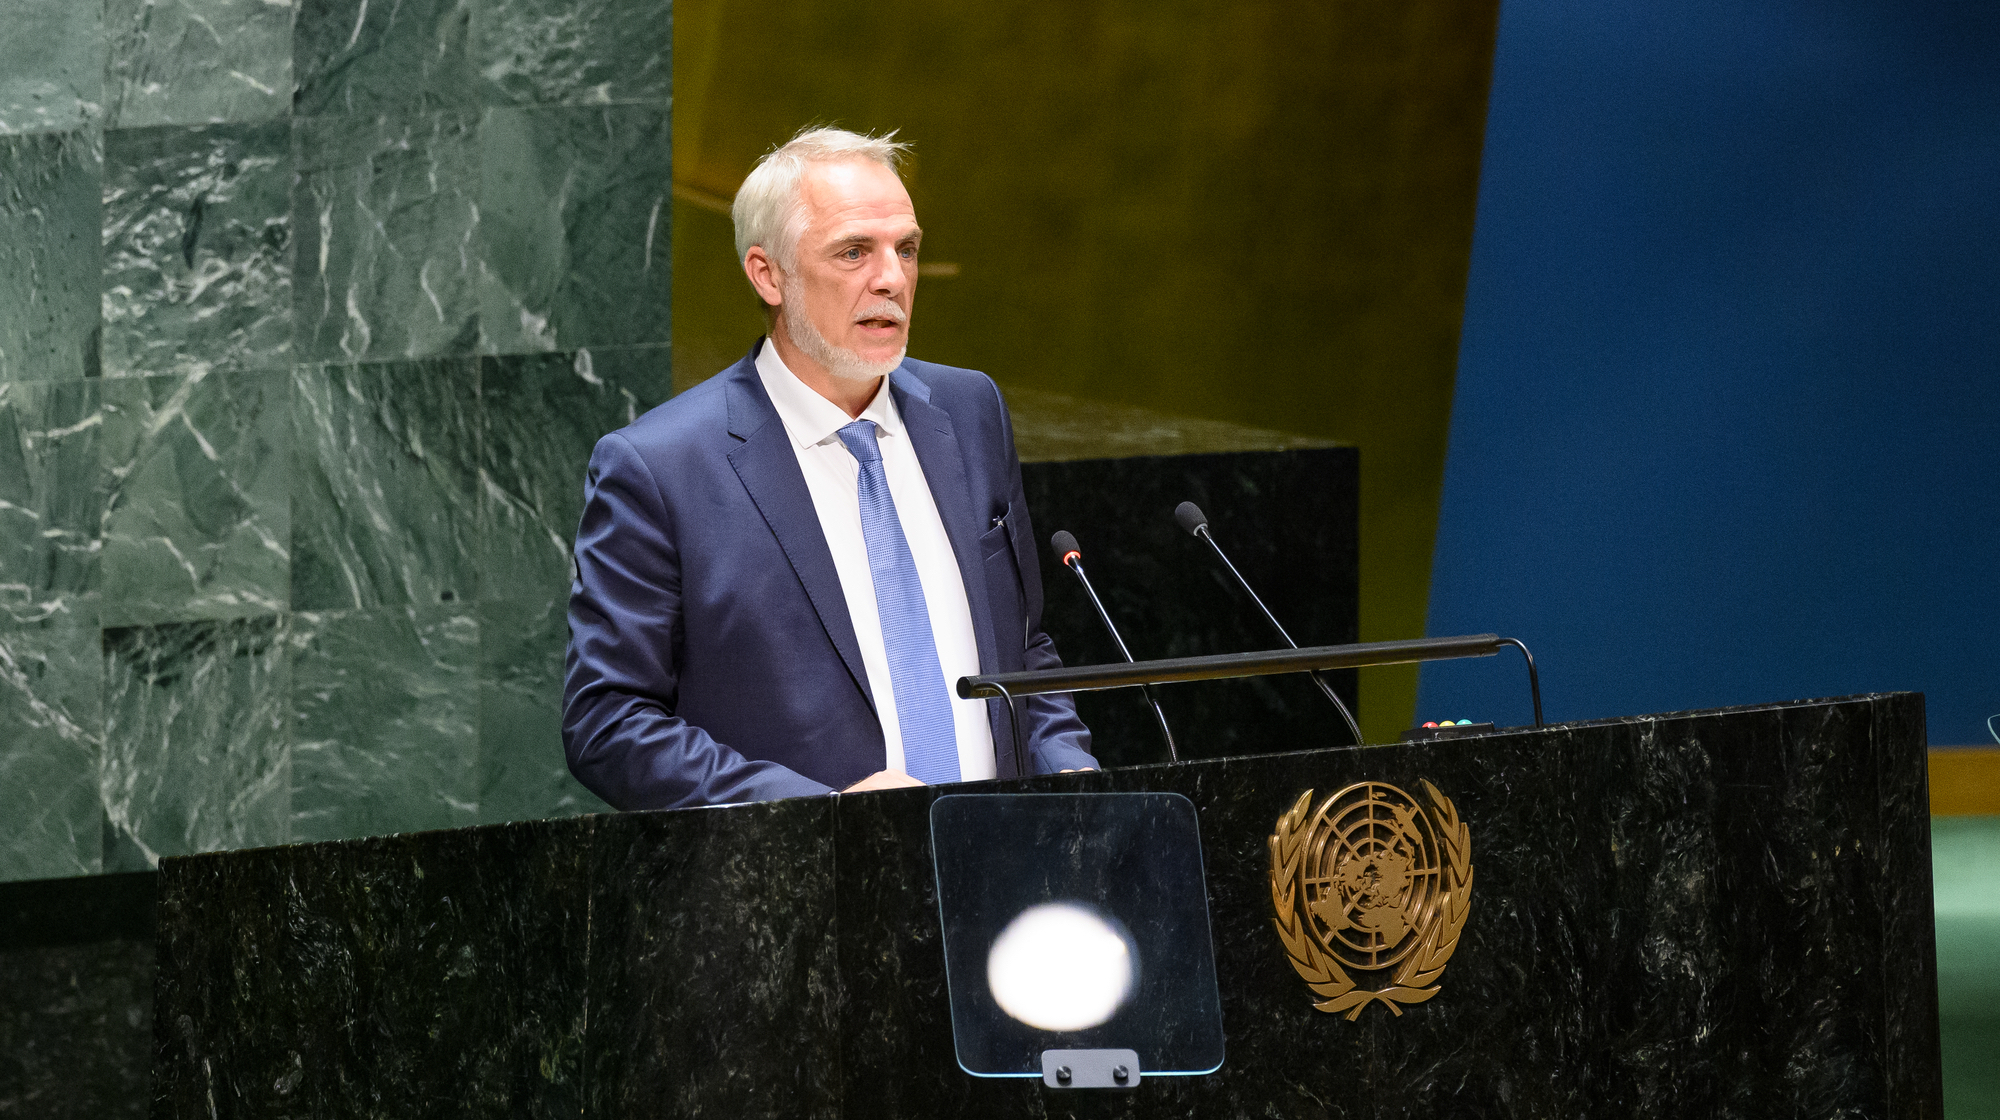 Ambassador Kmentt addressing the UN General Assembly